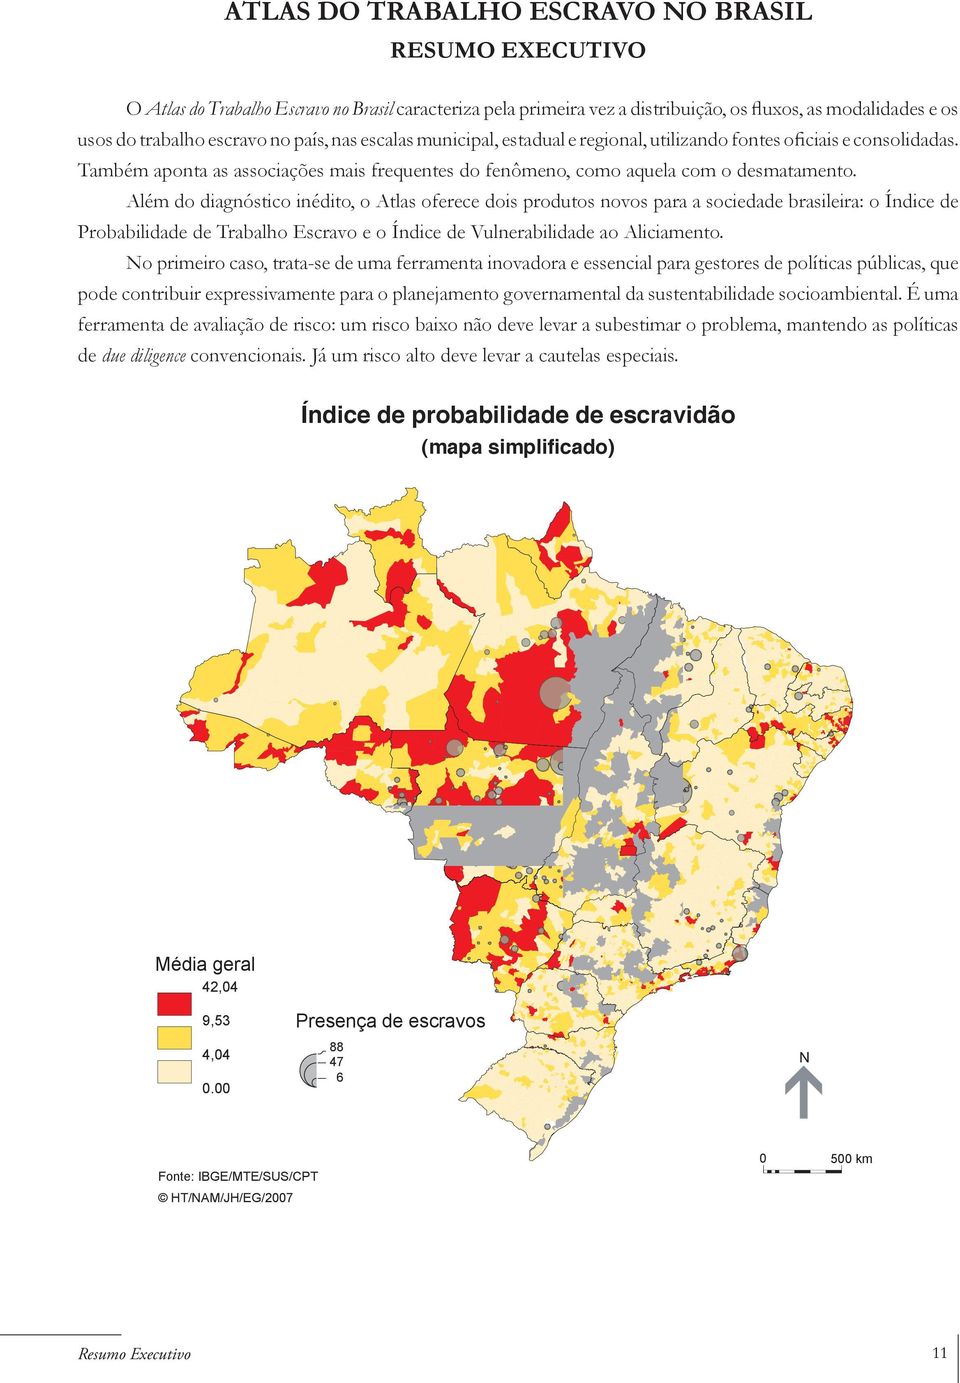 Além do diagnóstico inédito, o Atlas oferece dois produtos novos para a sociedade brasileira: o Índice de Probabilidade de Trabalho Escravo e o Índice de Vulnerabilidade ao Aliciamento.